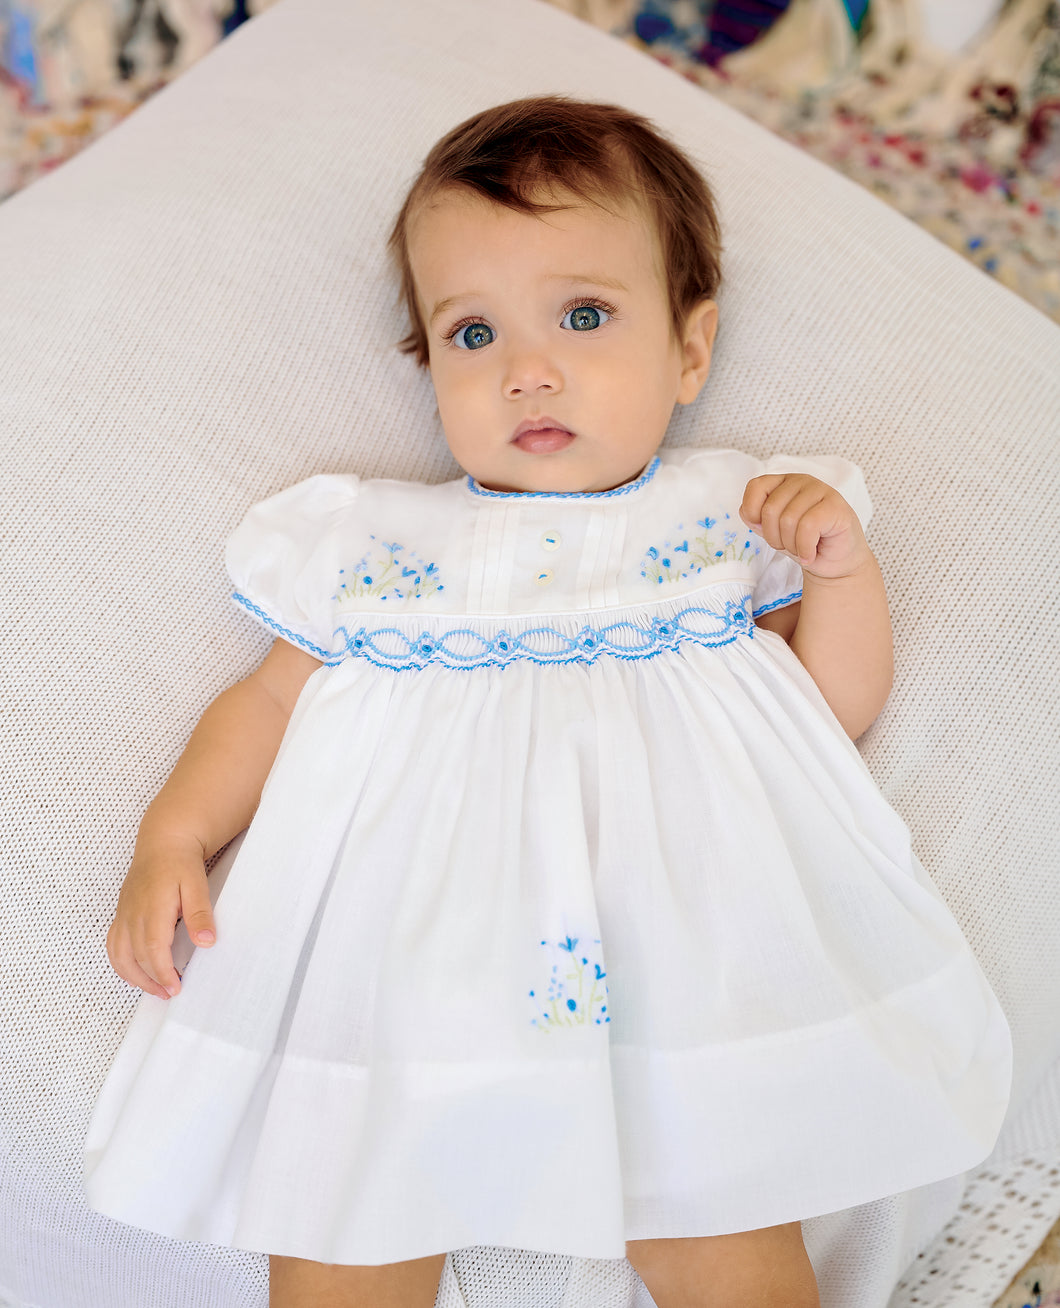 Sarah Louise Smocked Dress White/Blue